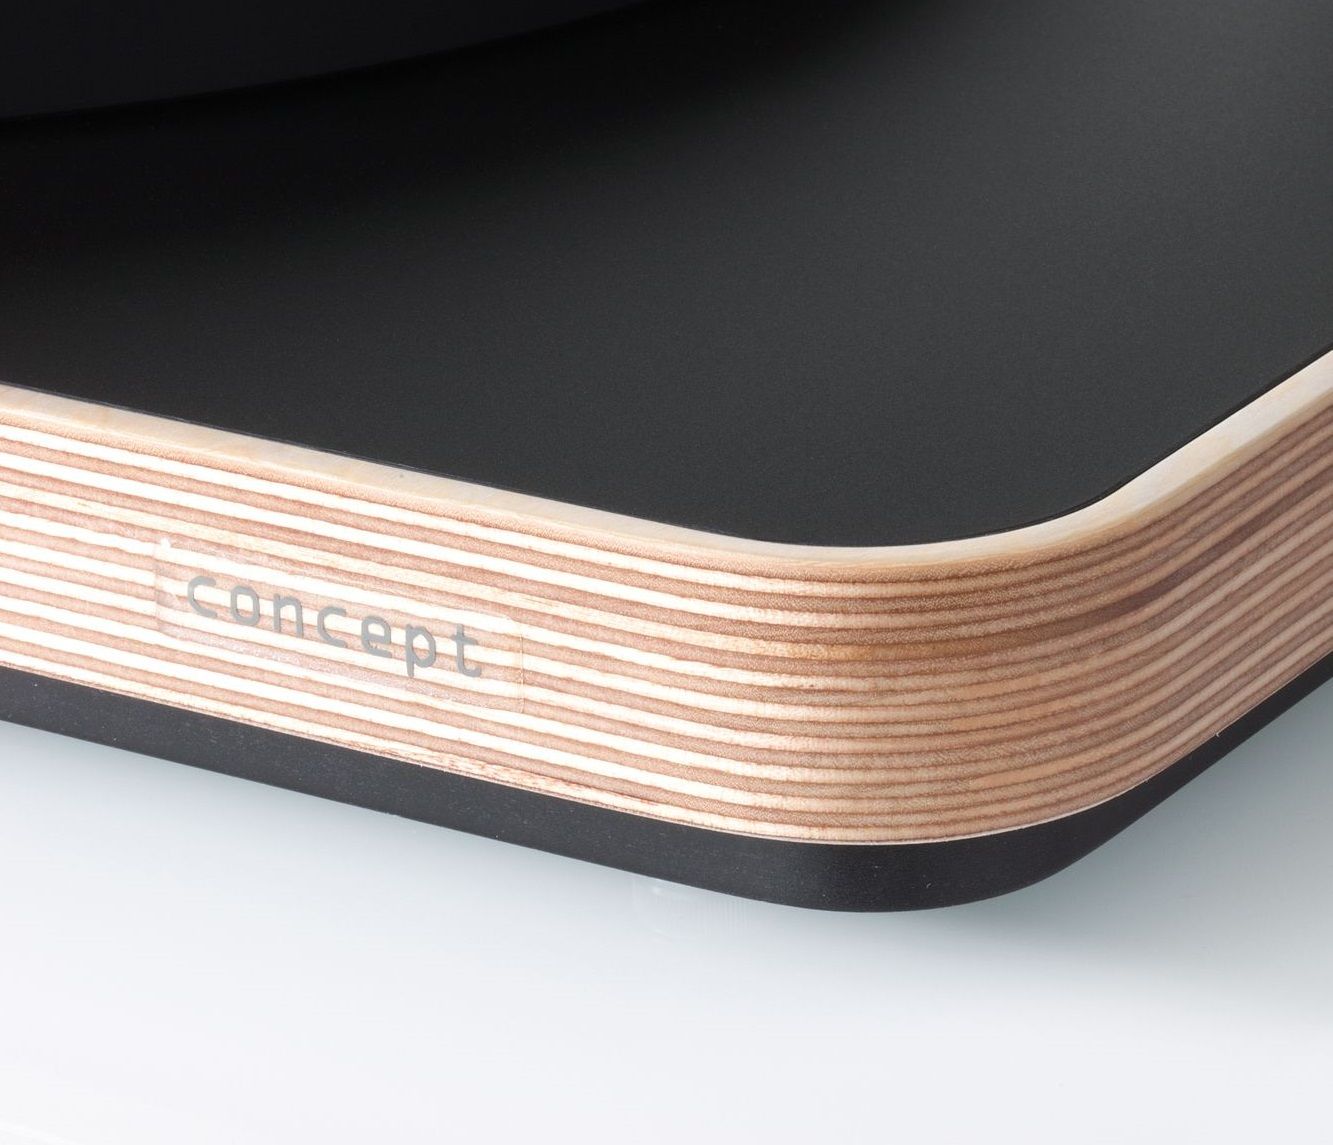 Програвач вінілових дисків: Clearaudio Concept Black with Wood (TP053/Wood)